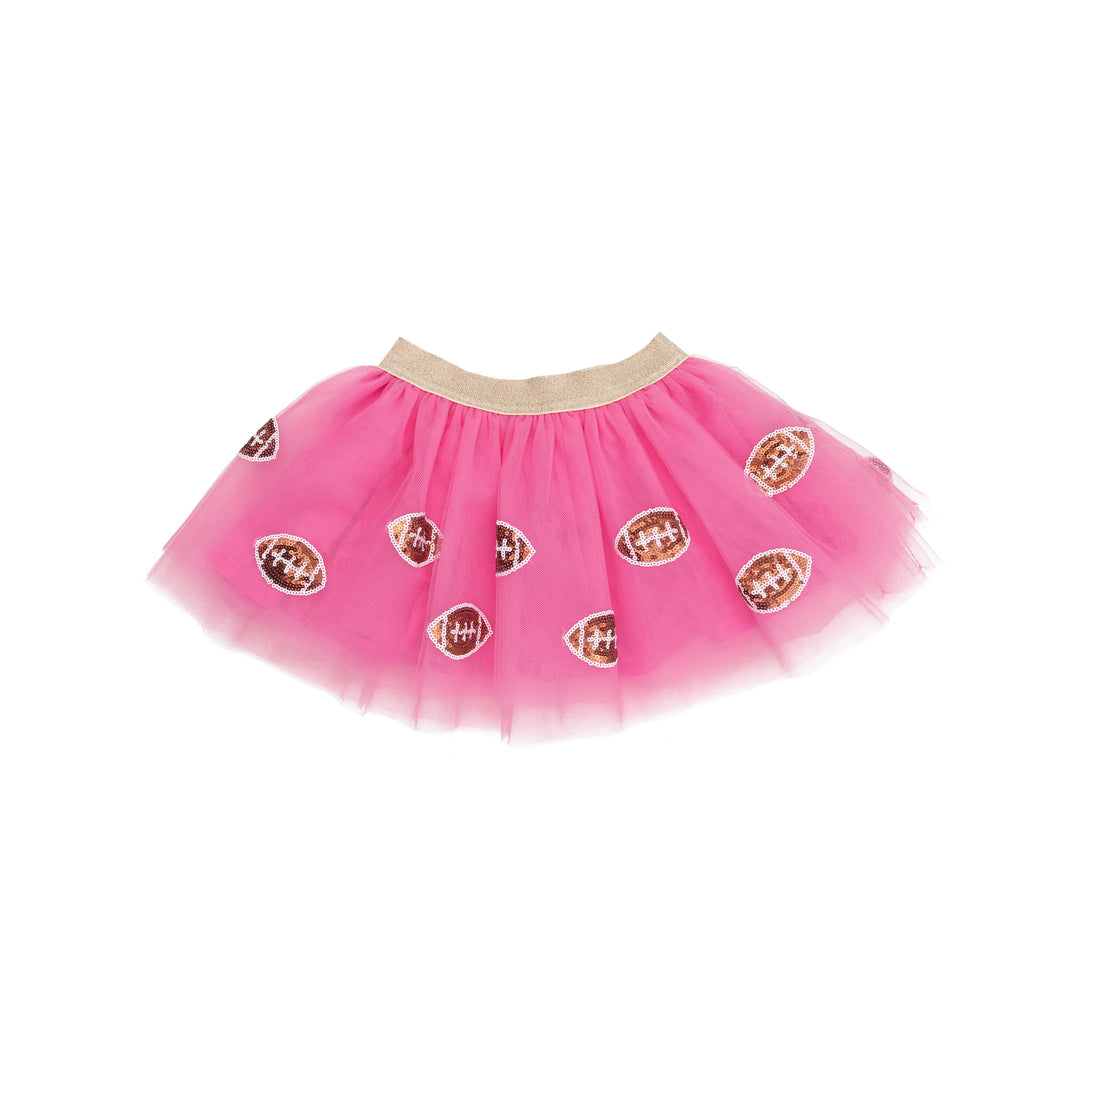 Pink Football Tutu Skirt